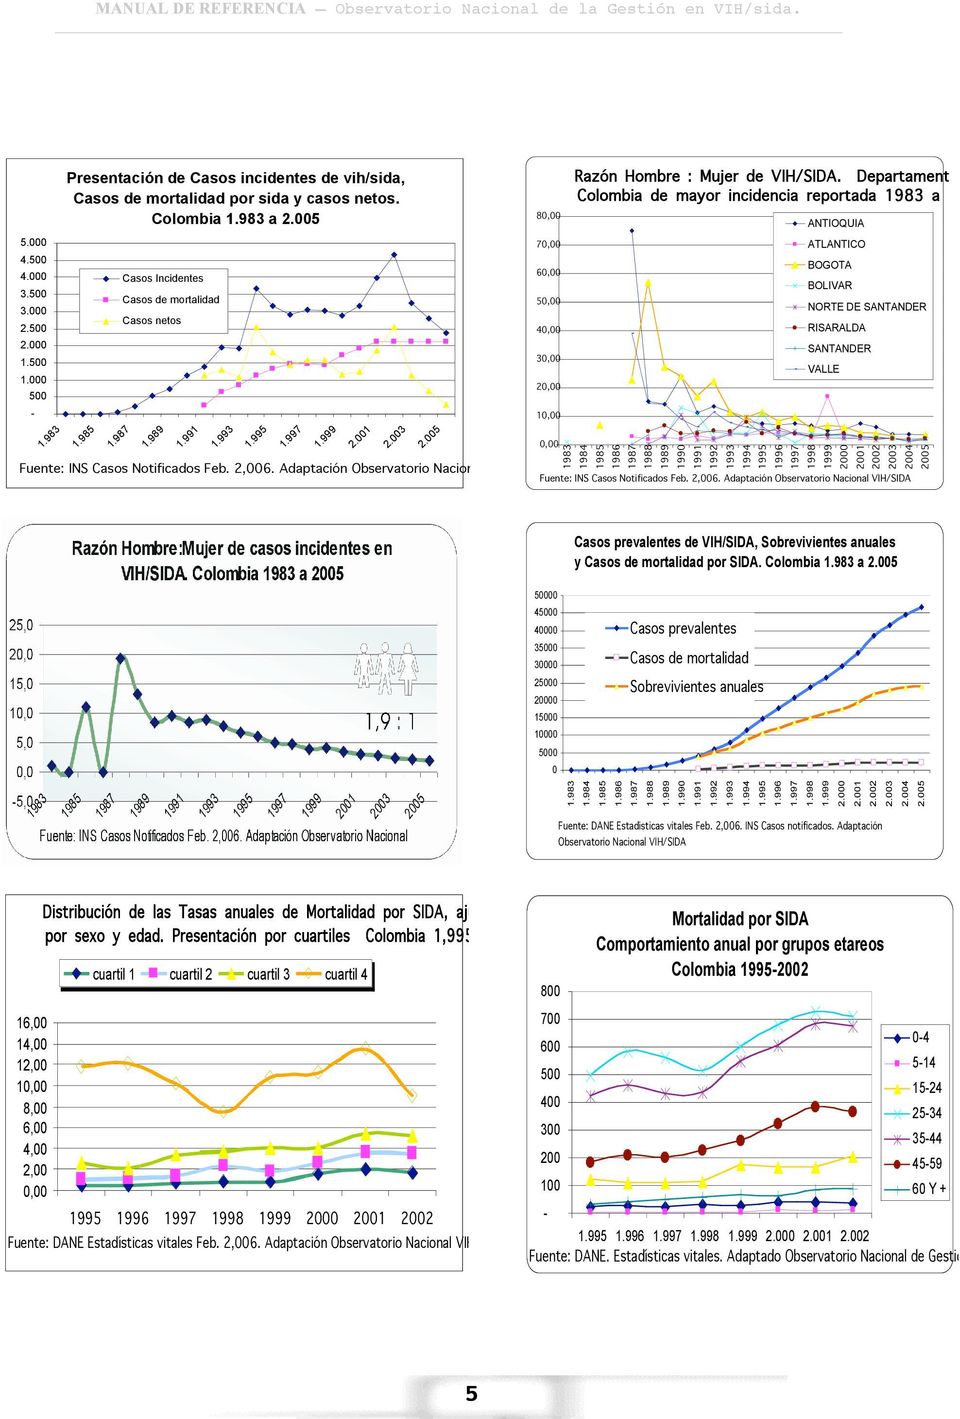 Departamentos en Colombia de mayor incidencia reportada 1983 a 2005. Fuente: INS Casos Notificados Feb. 2,006.